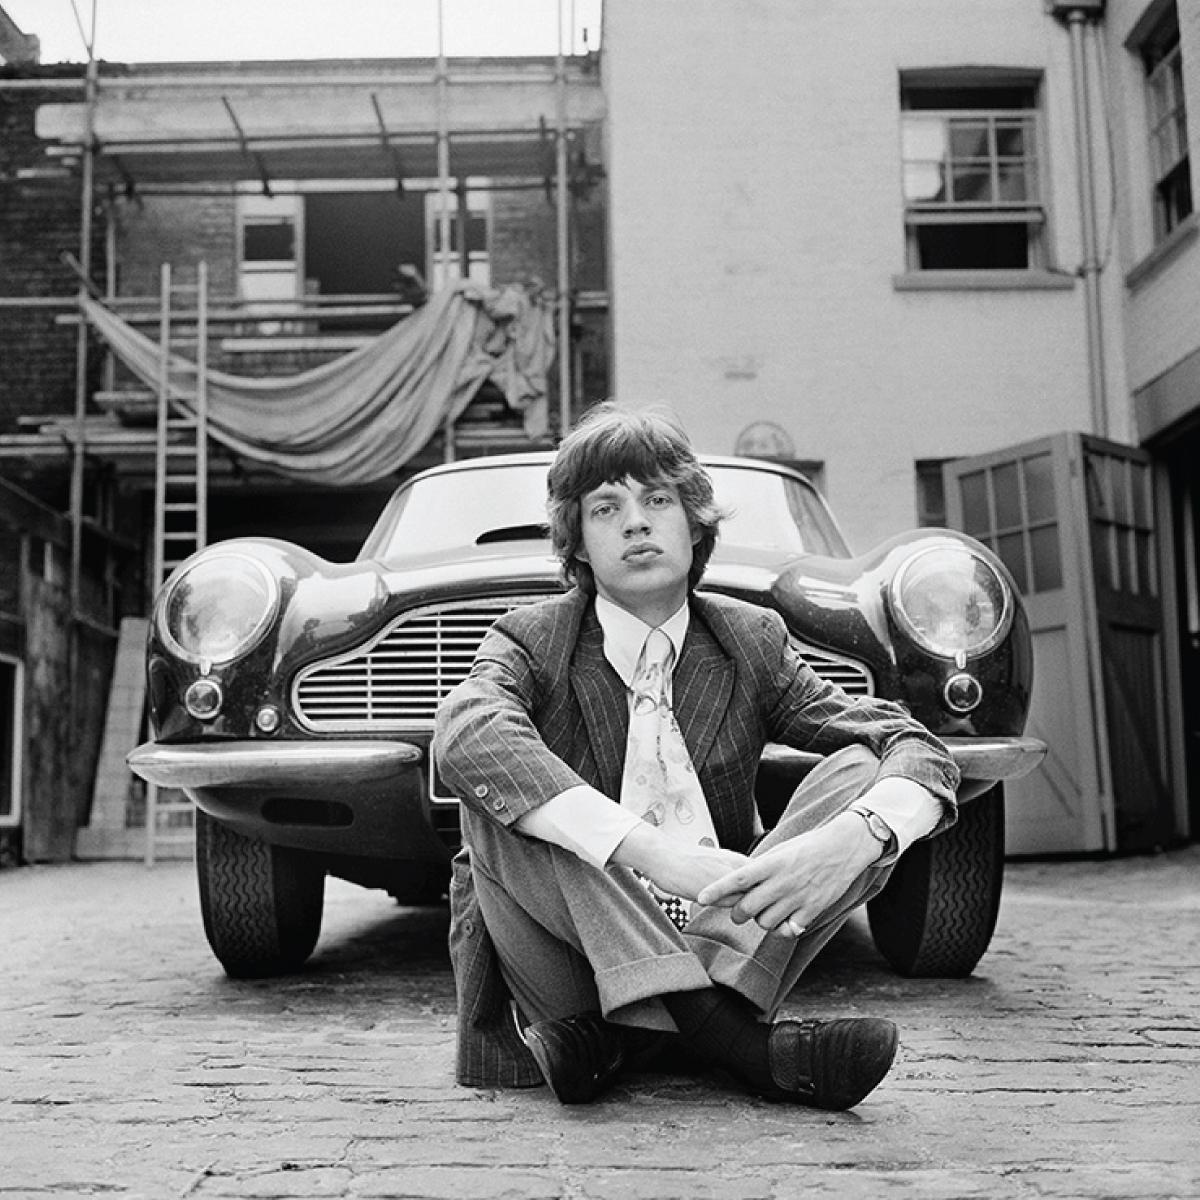 Mick Jagger des Rolling Stones avec sa chère Aston Martin DB6, prise devant son appartement londonien en 1966 par Gered Mankowitz.

"J'ai pris une série de photos de chaque membre du groupe à la maison pour qu'ils n'aient pas à supporter les